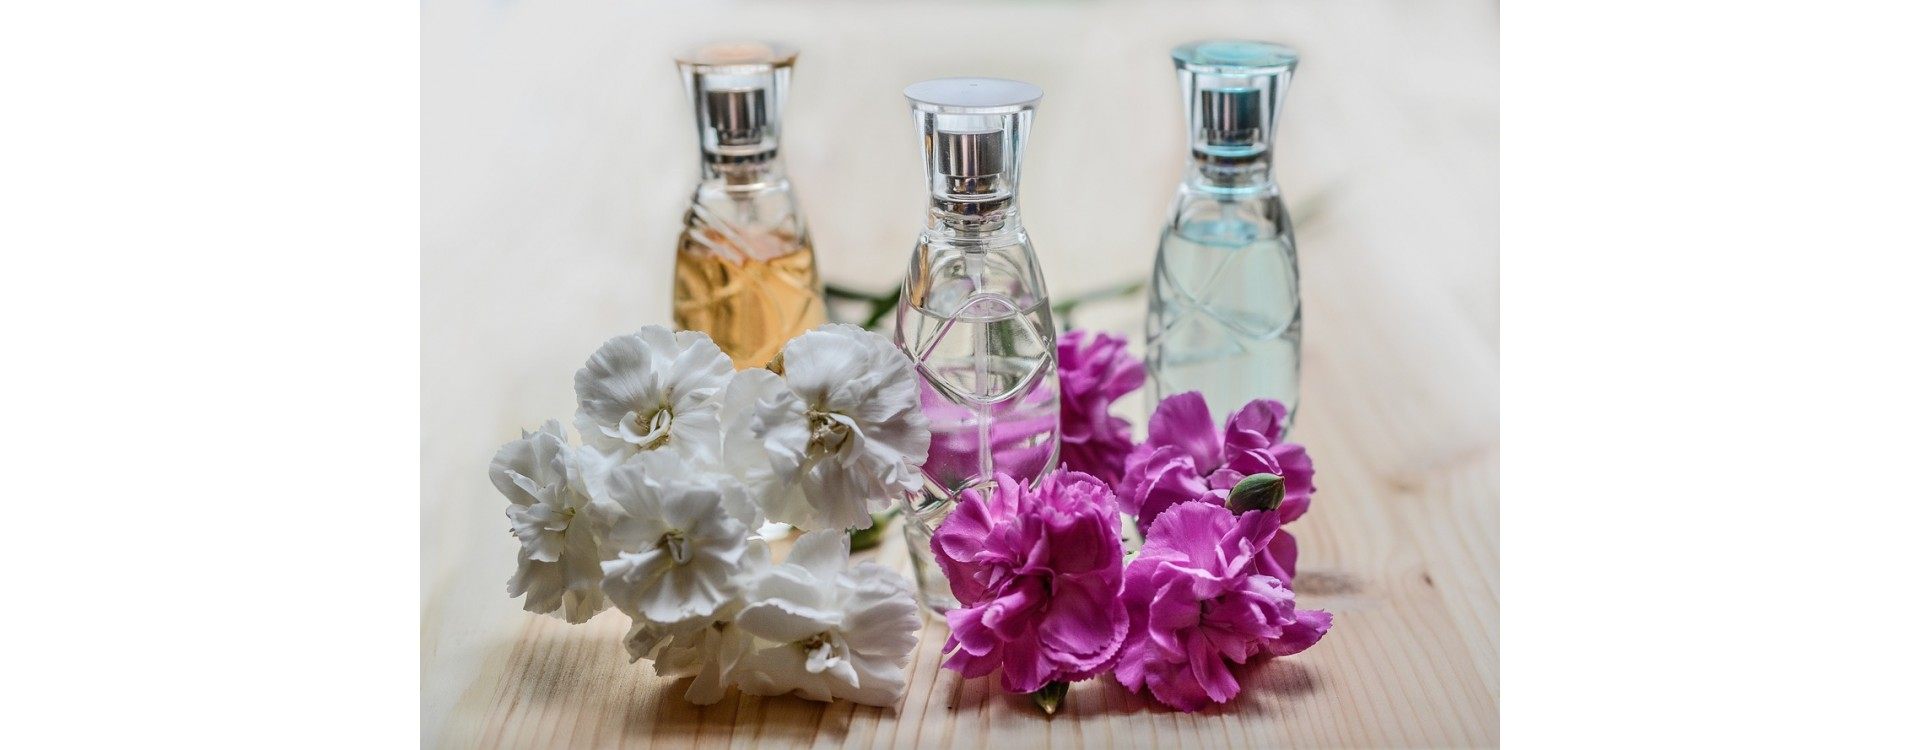 Parfums : pourquoi opter pour des ingrédients naturels ?